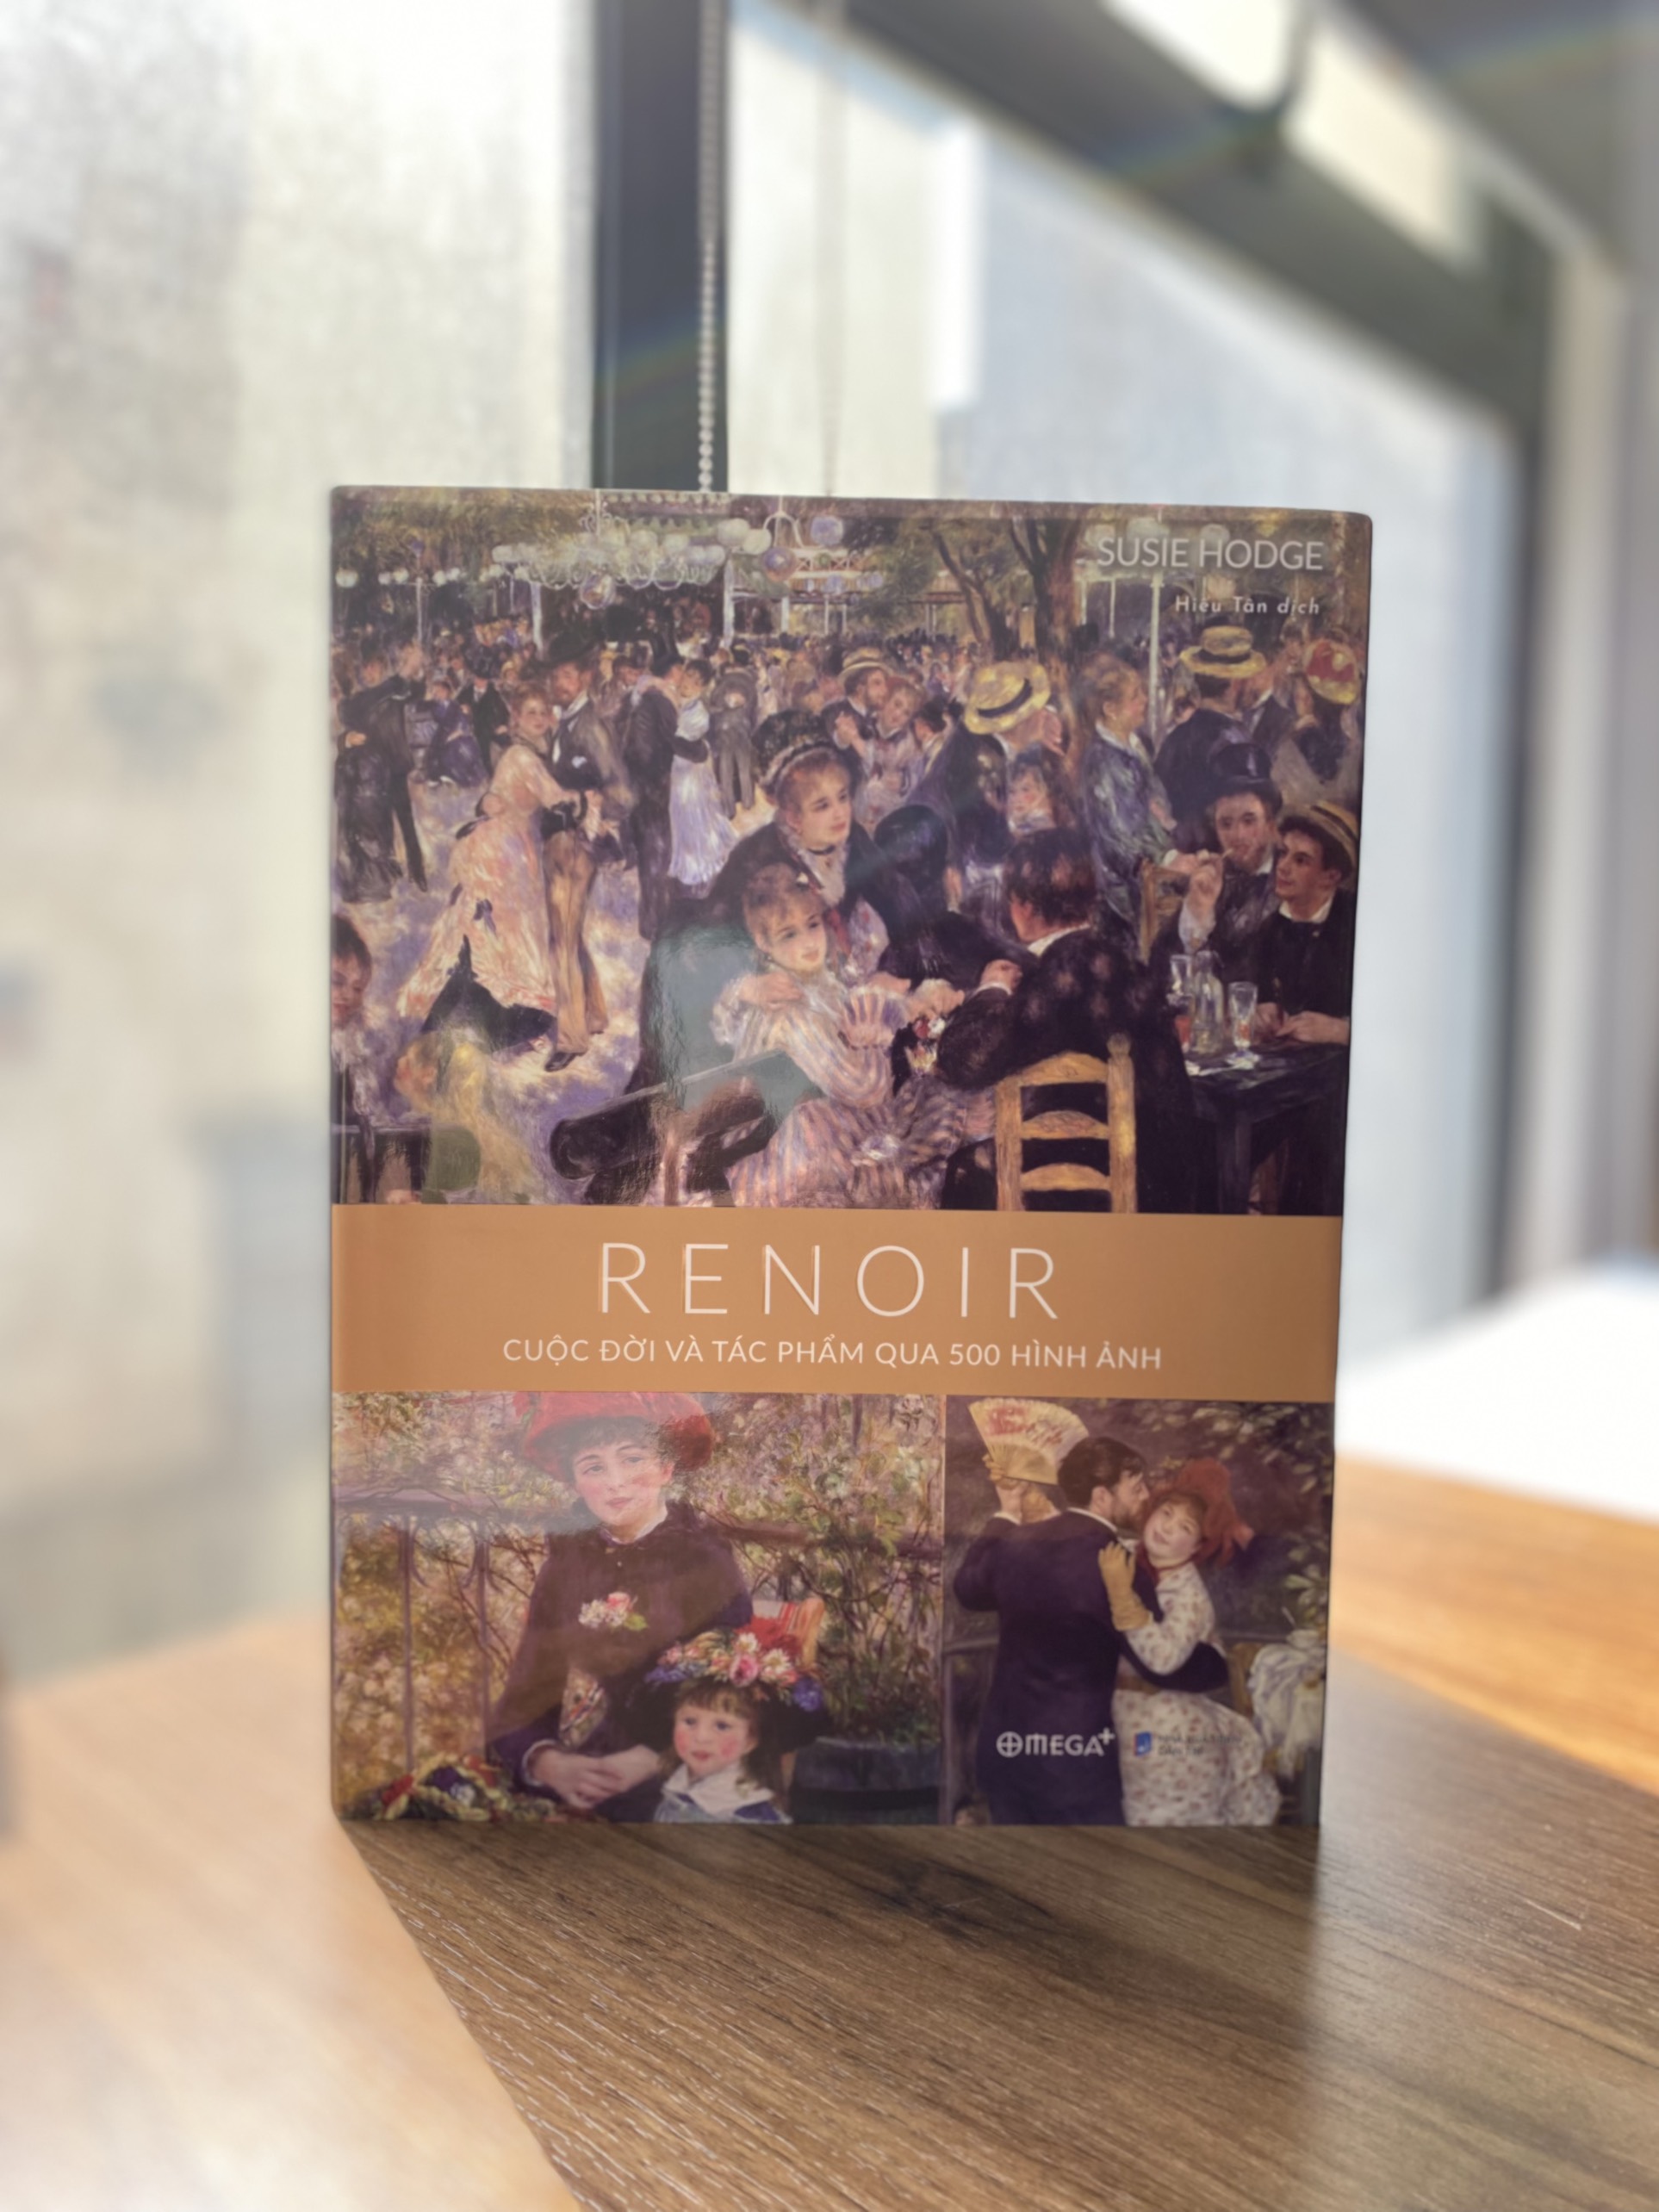 Cuộc đời của Renoir qua 500 hình ảnh - 4